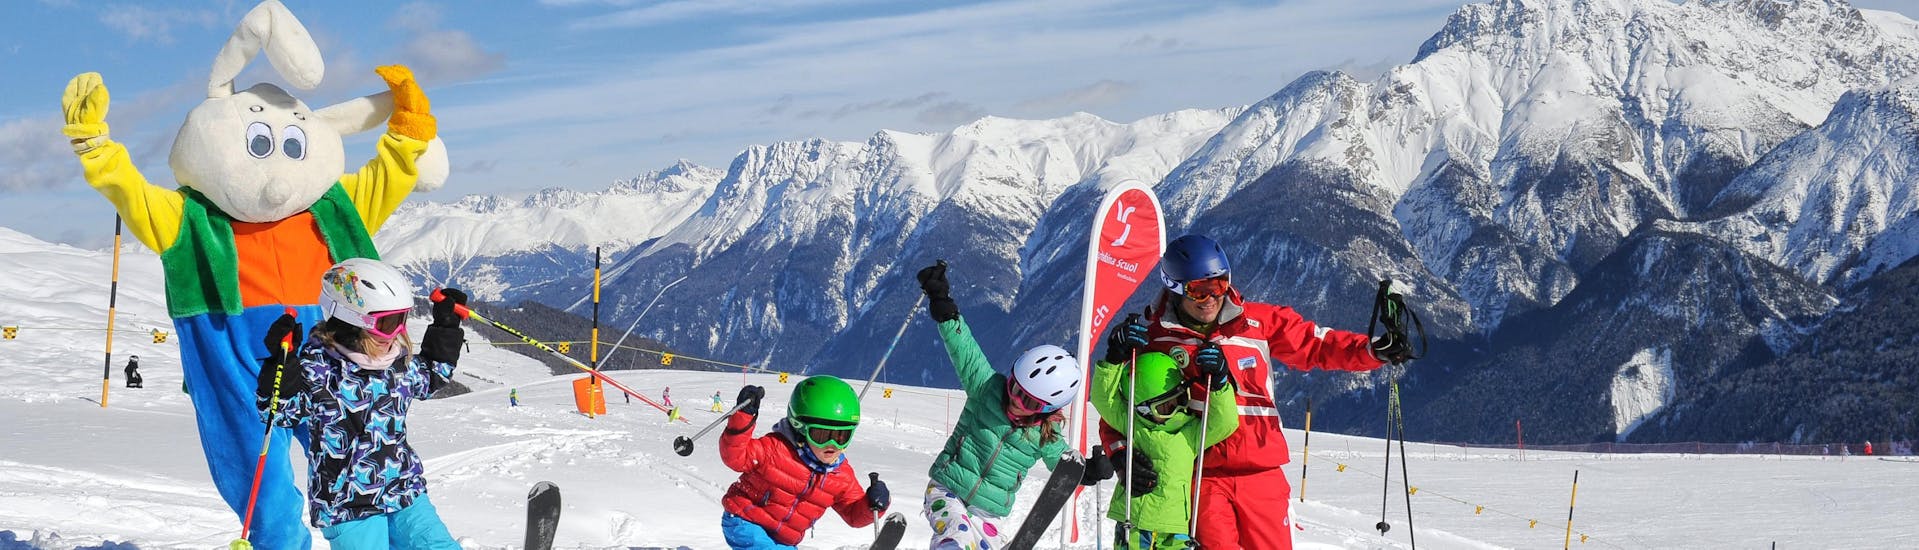 Skilessen voor kinderen (3-16 jaar) voor gevorderde skiërs - Halve dag.